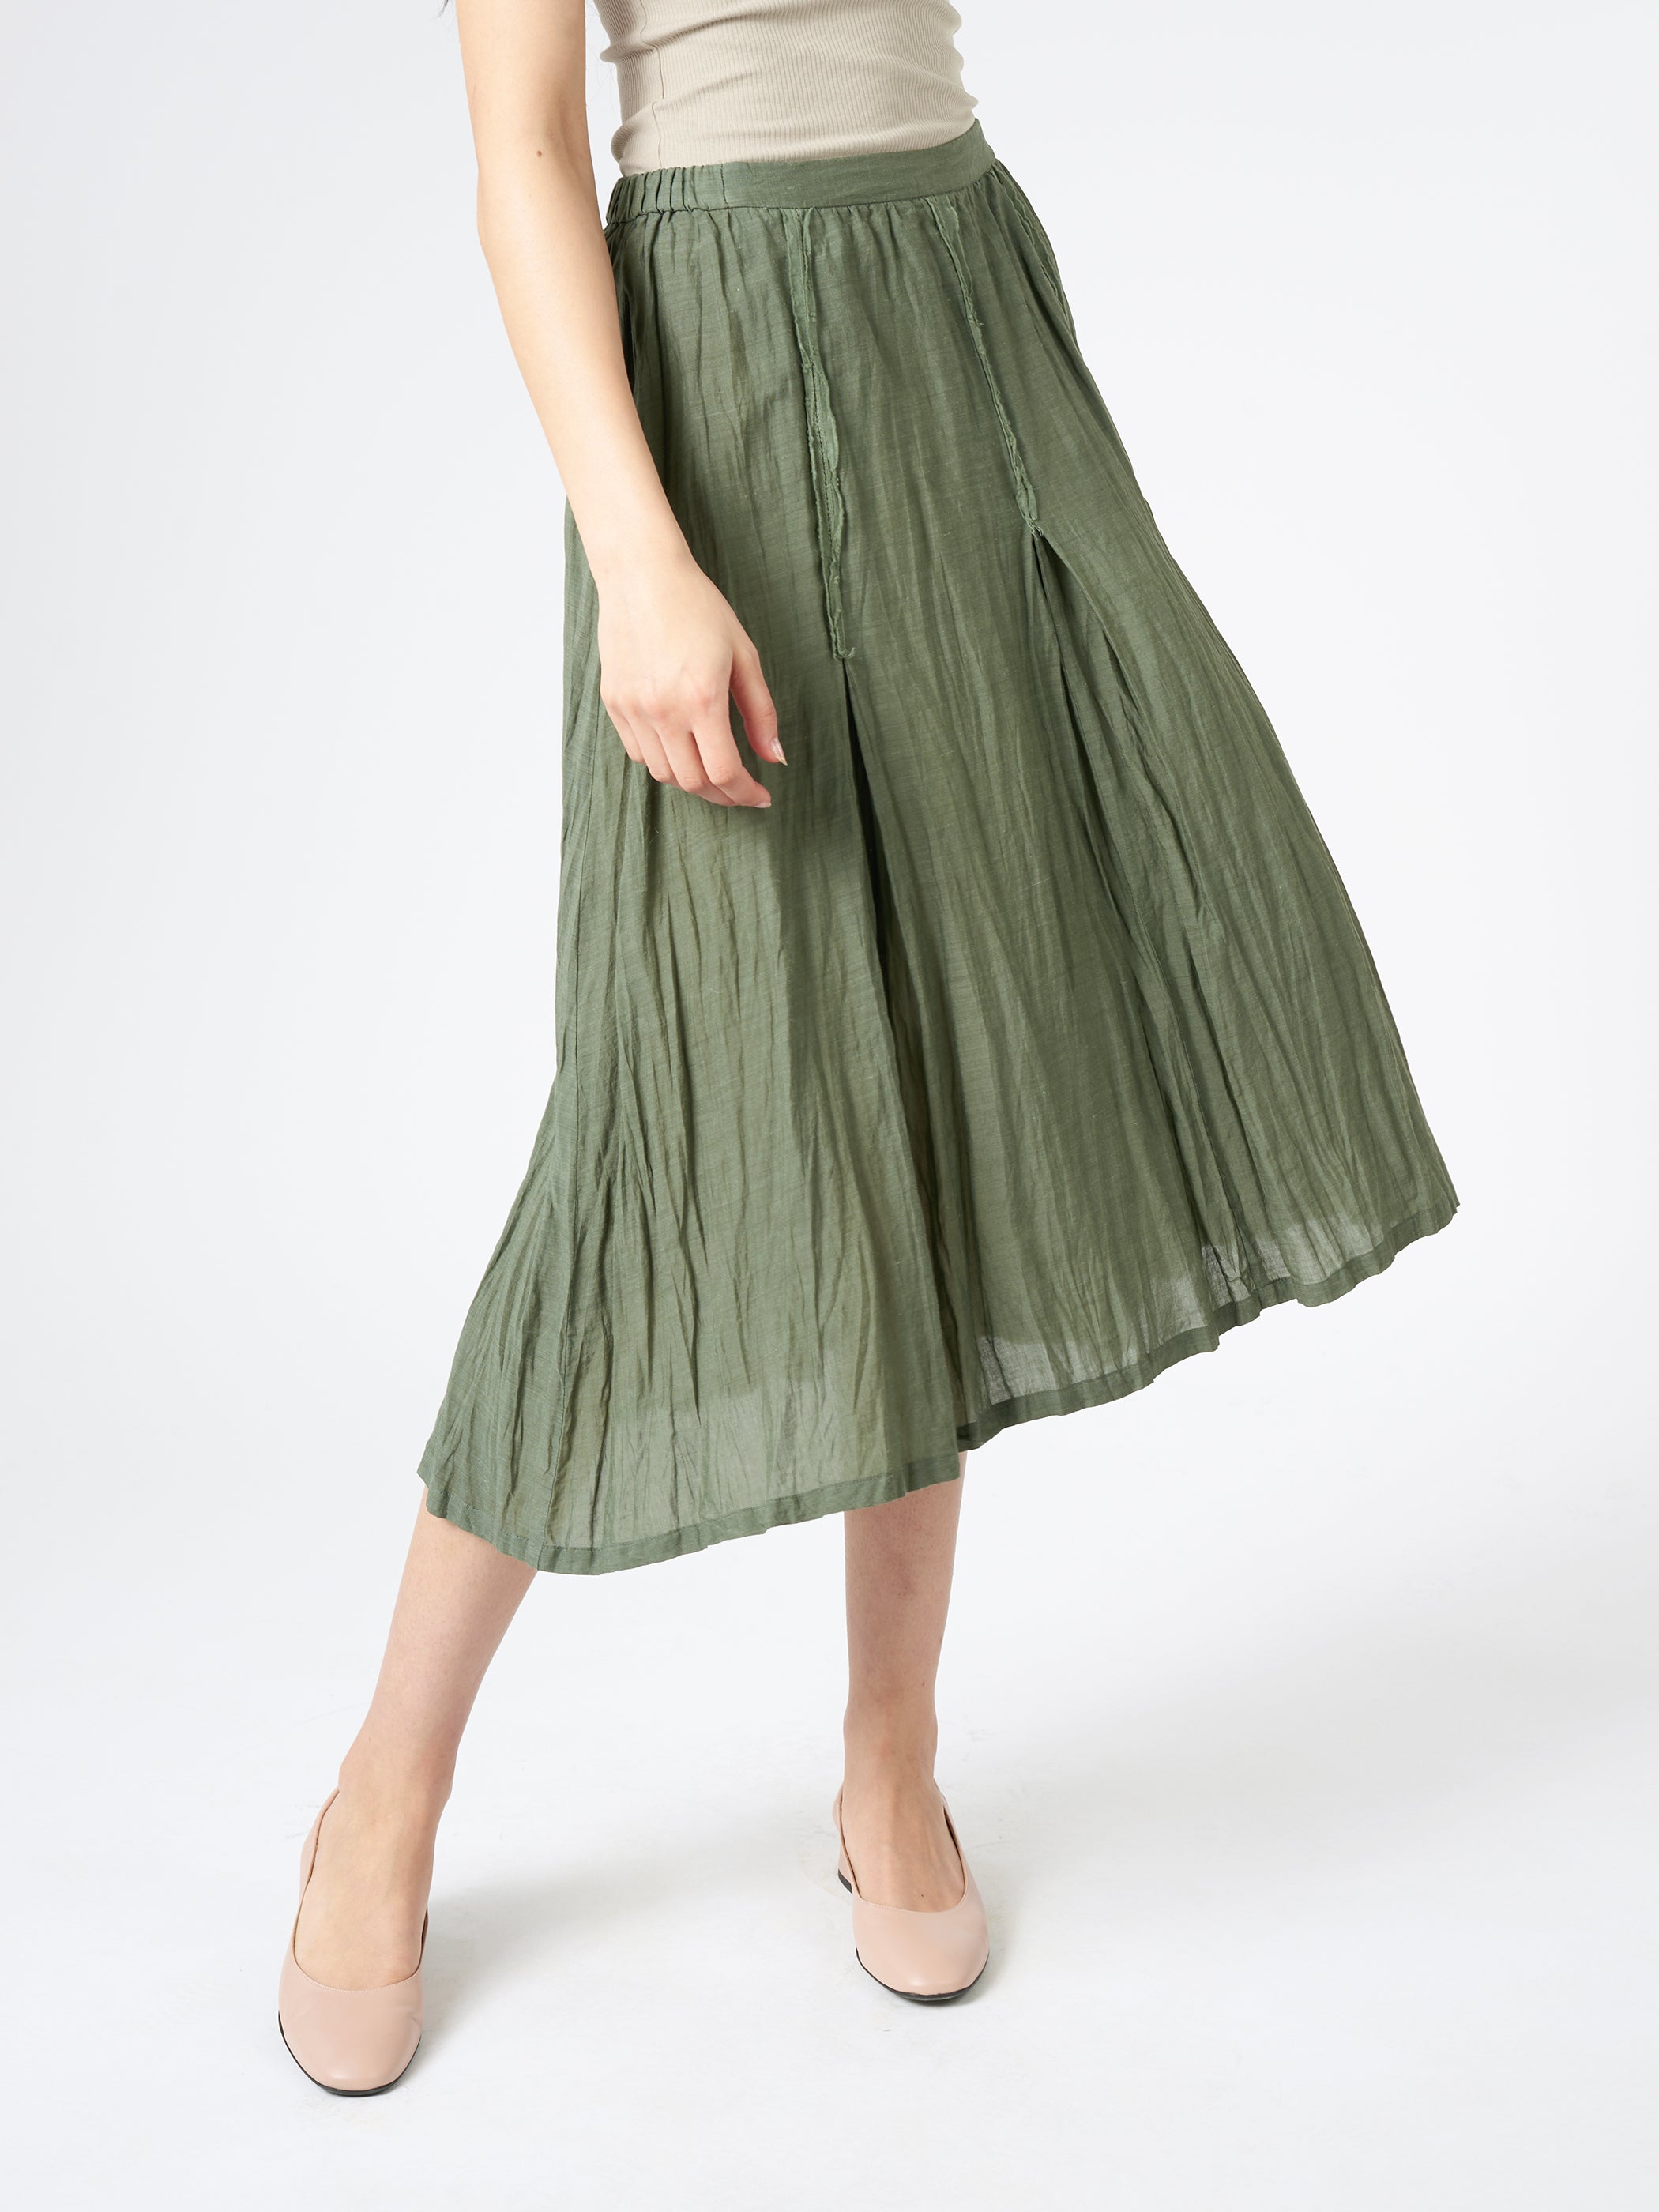 Botanical Garment Dye Skirt